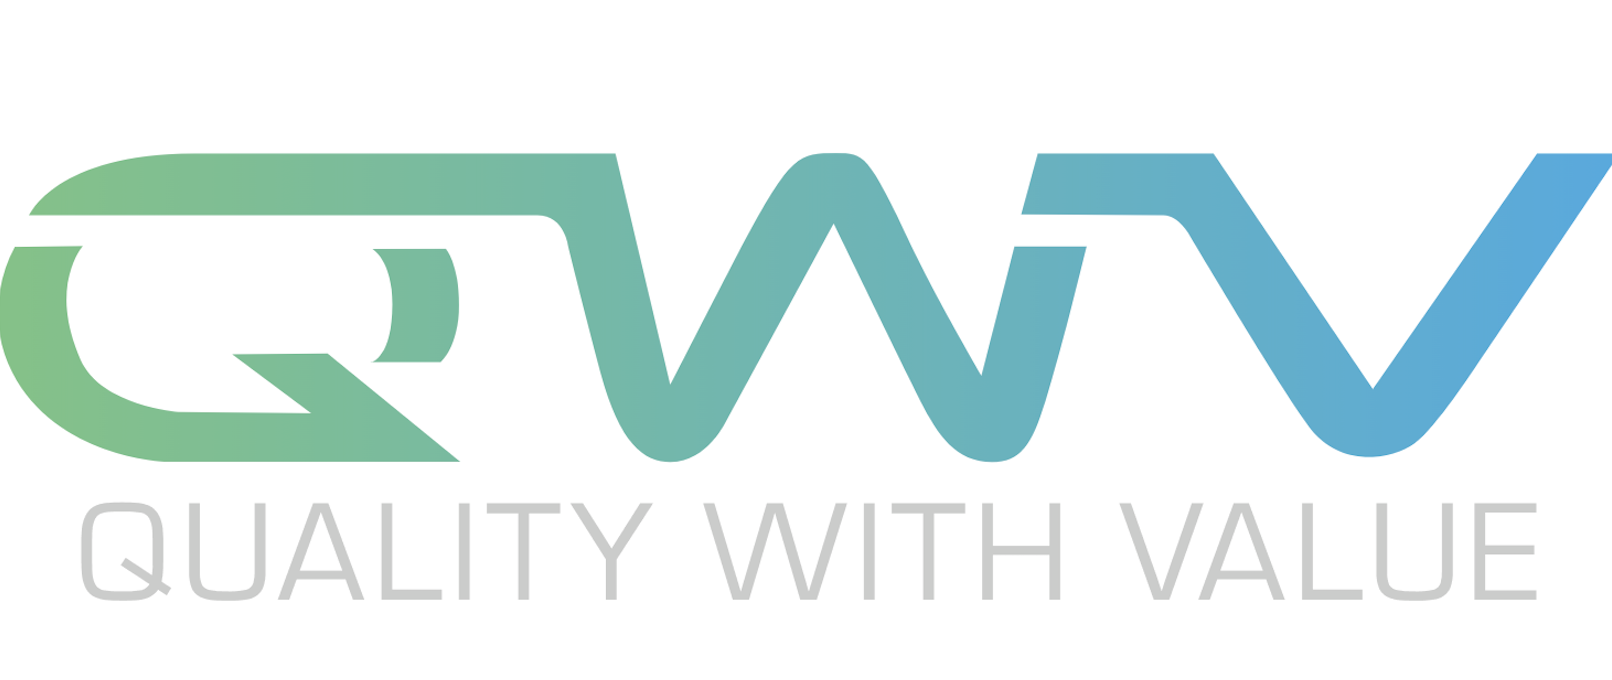 https://qwvalue.com/ logo